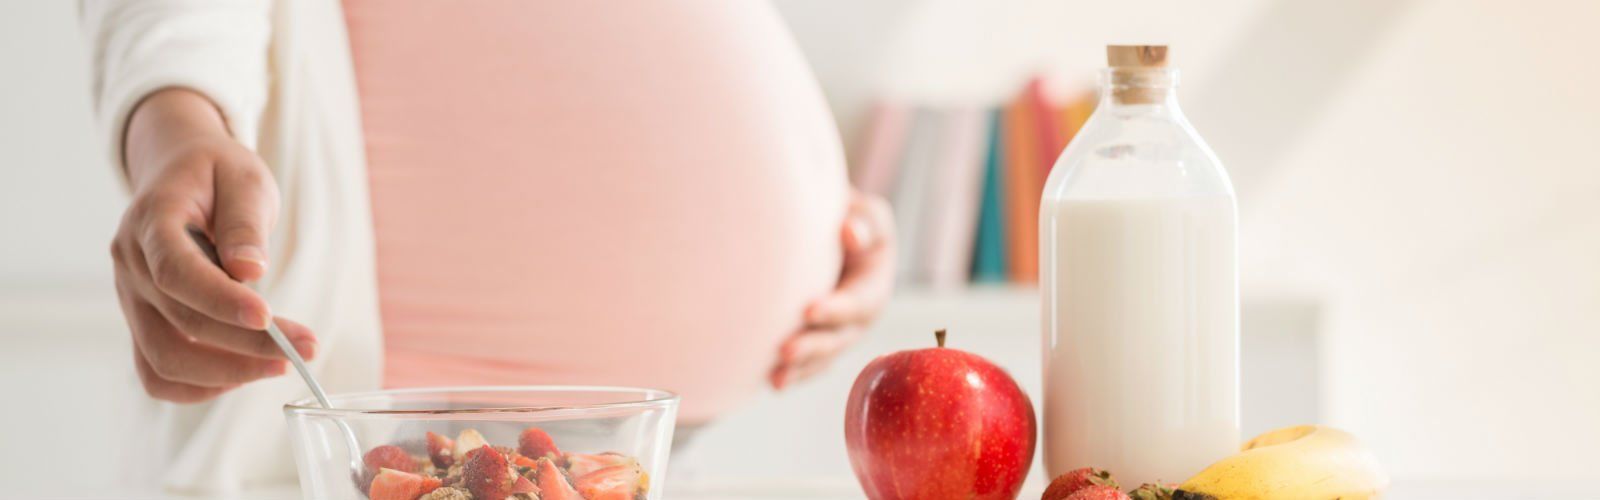 Питание во время беременности: советы по питанию для 